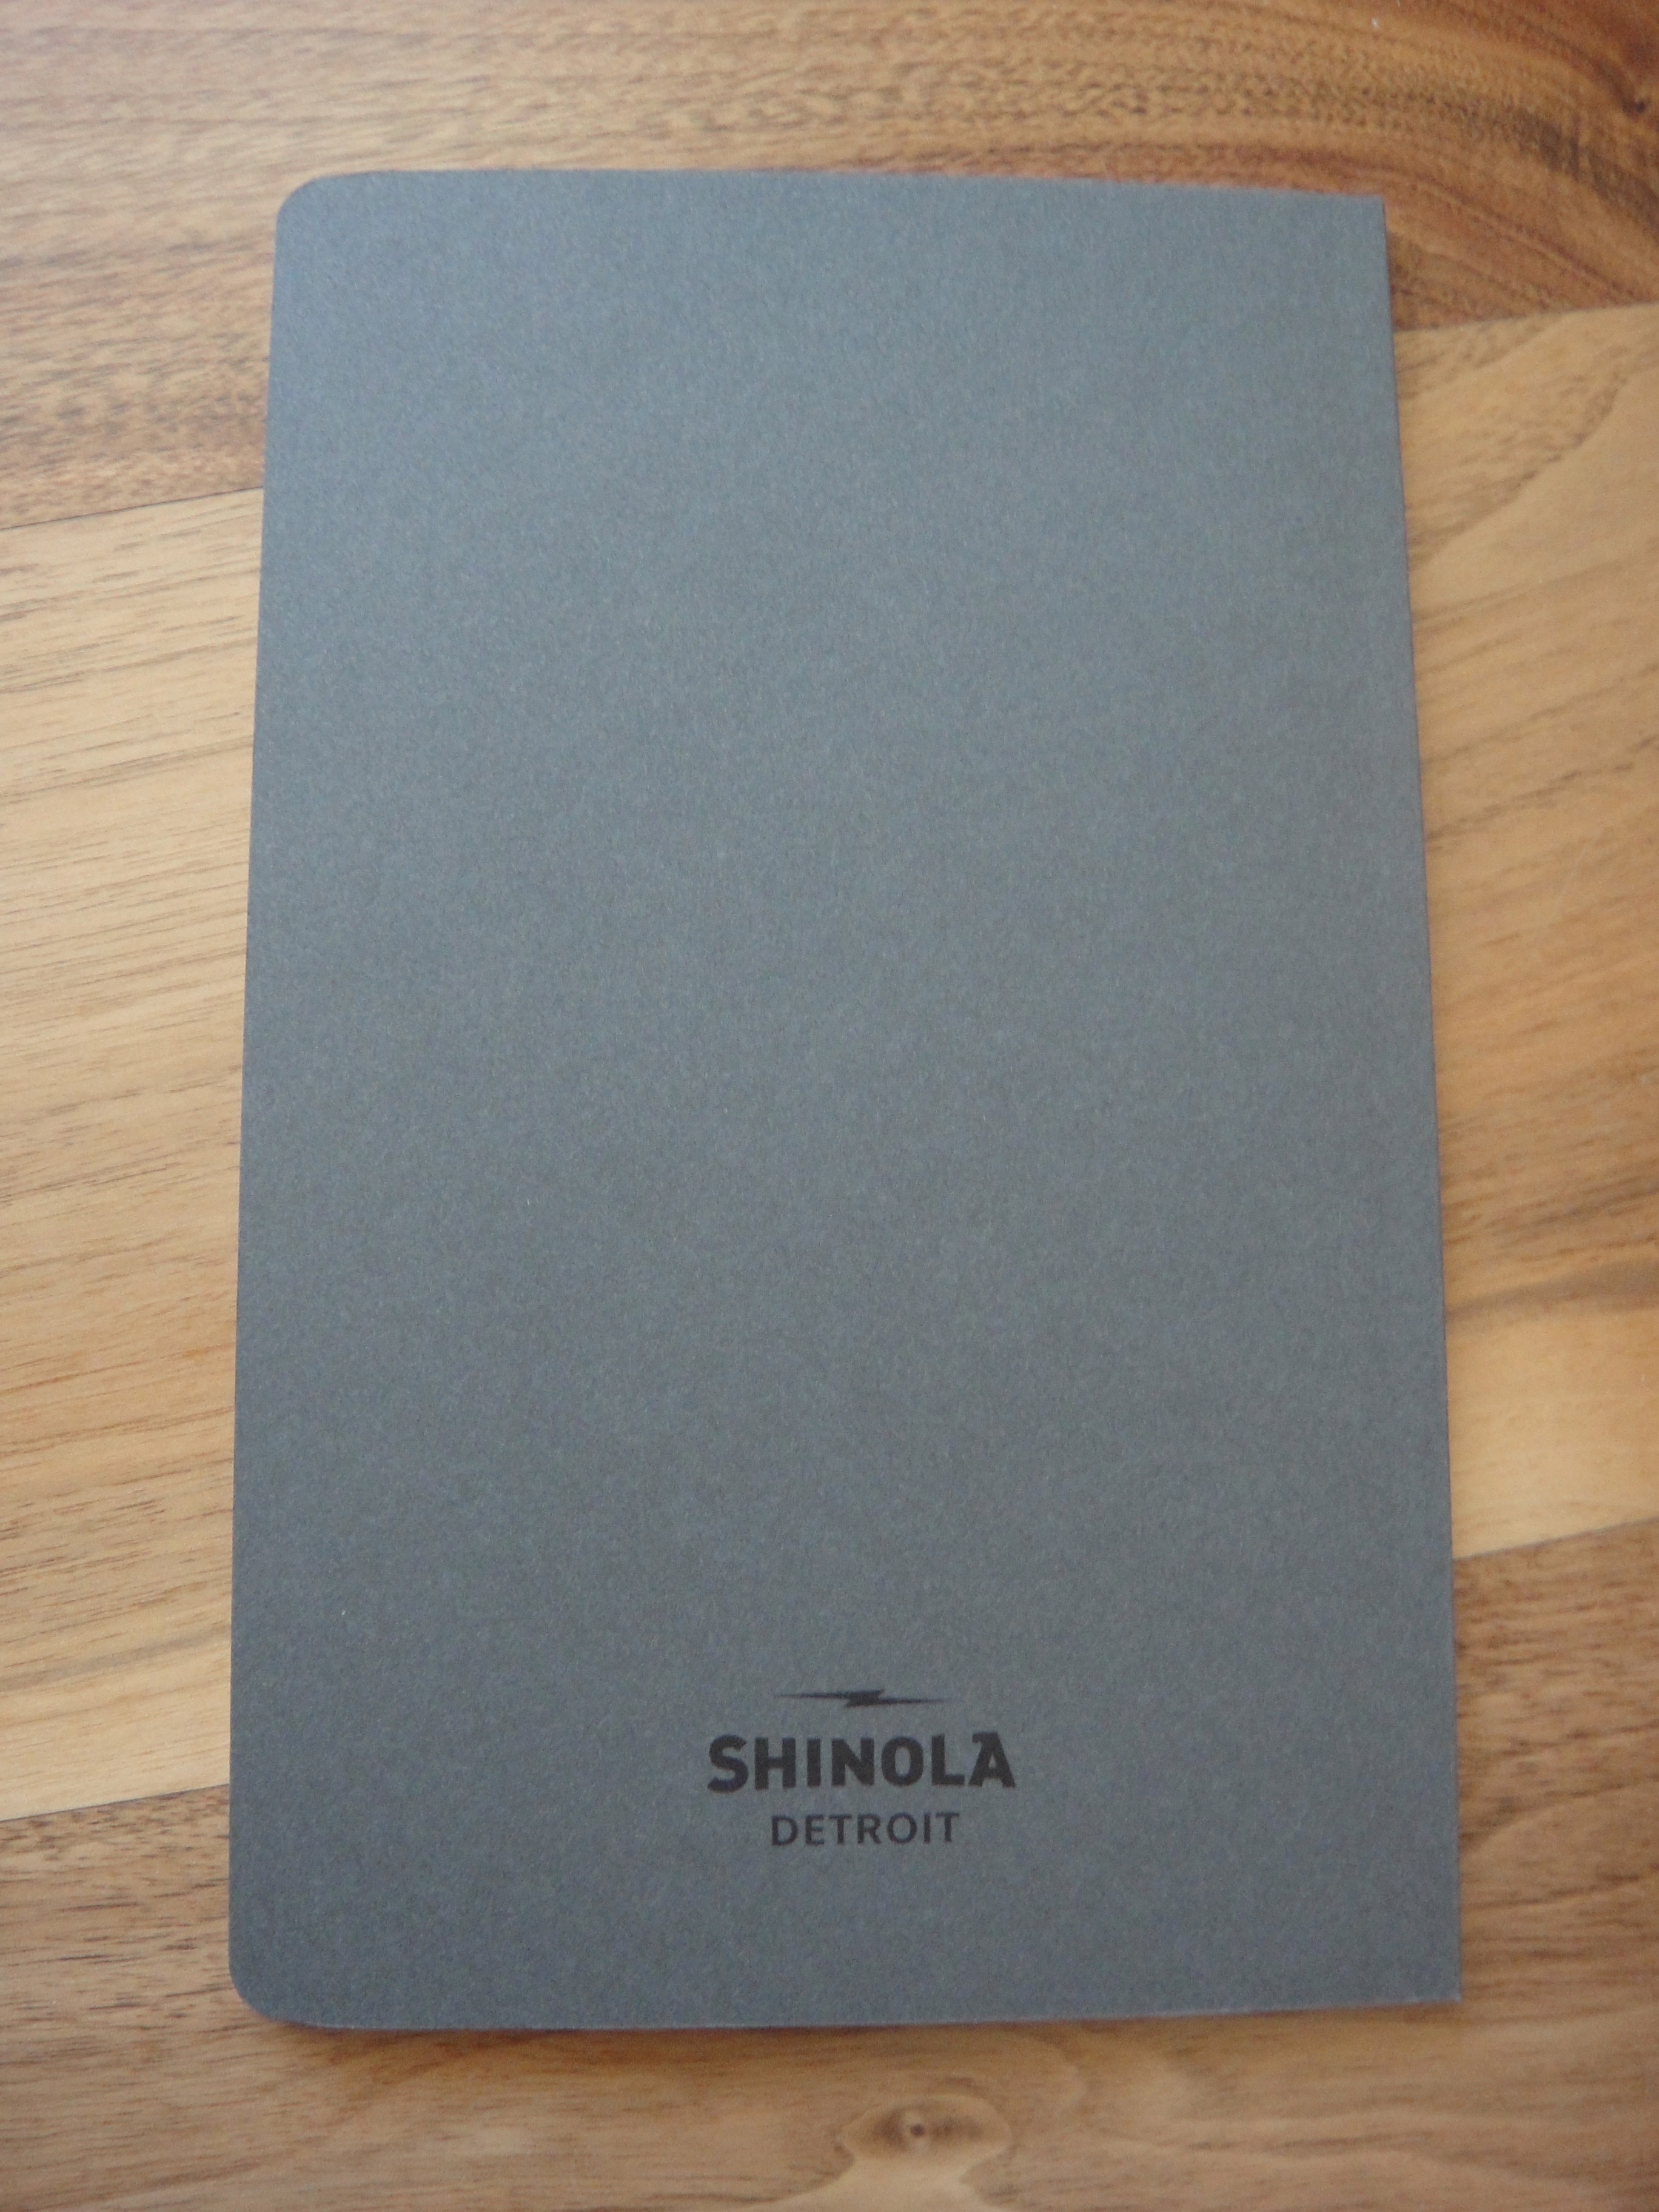 shinola journal